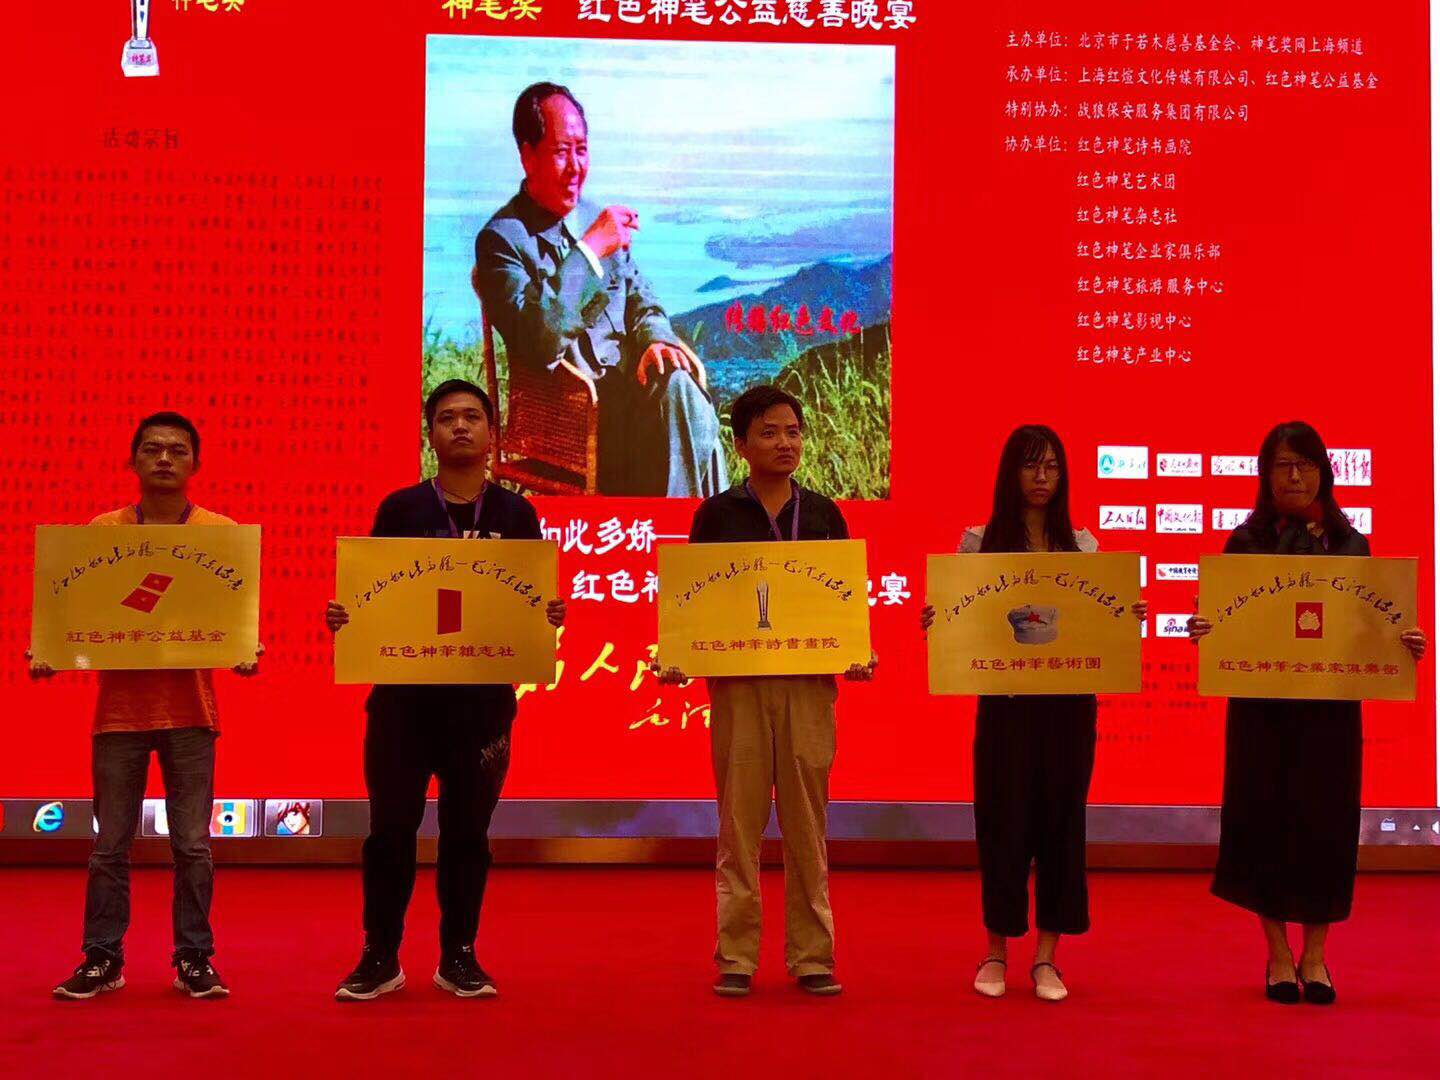 2018年6月3日下午在上海闵行区由“神笔奖”发起的红色神笔公益慈善活动